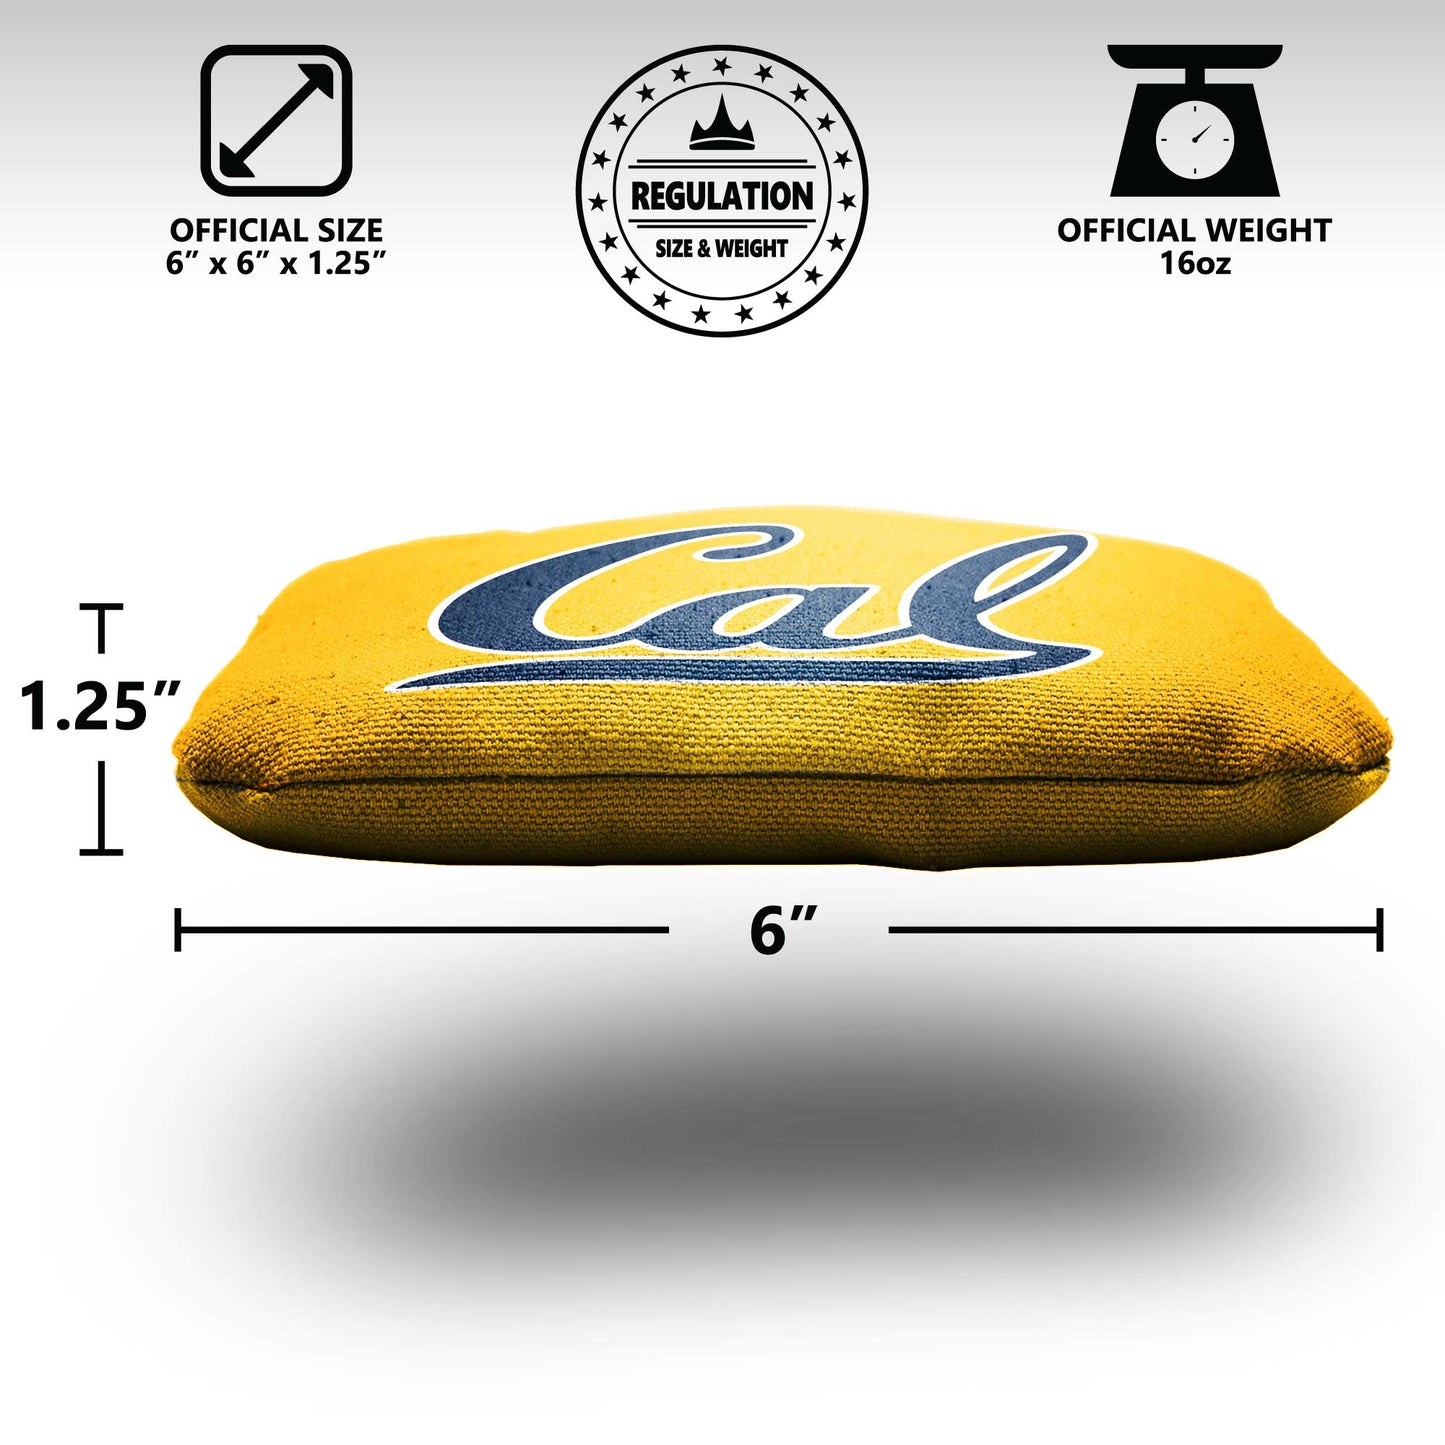 University of California Berkeley Cornhole Bags - 8 Cornhole Bags